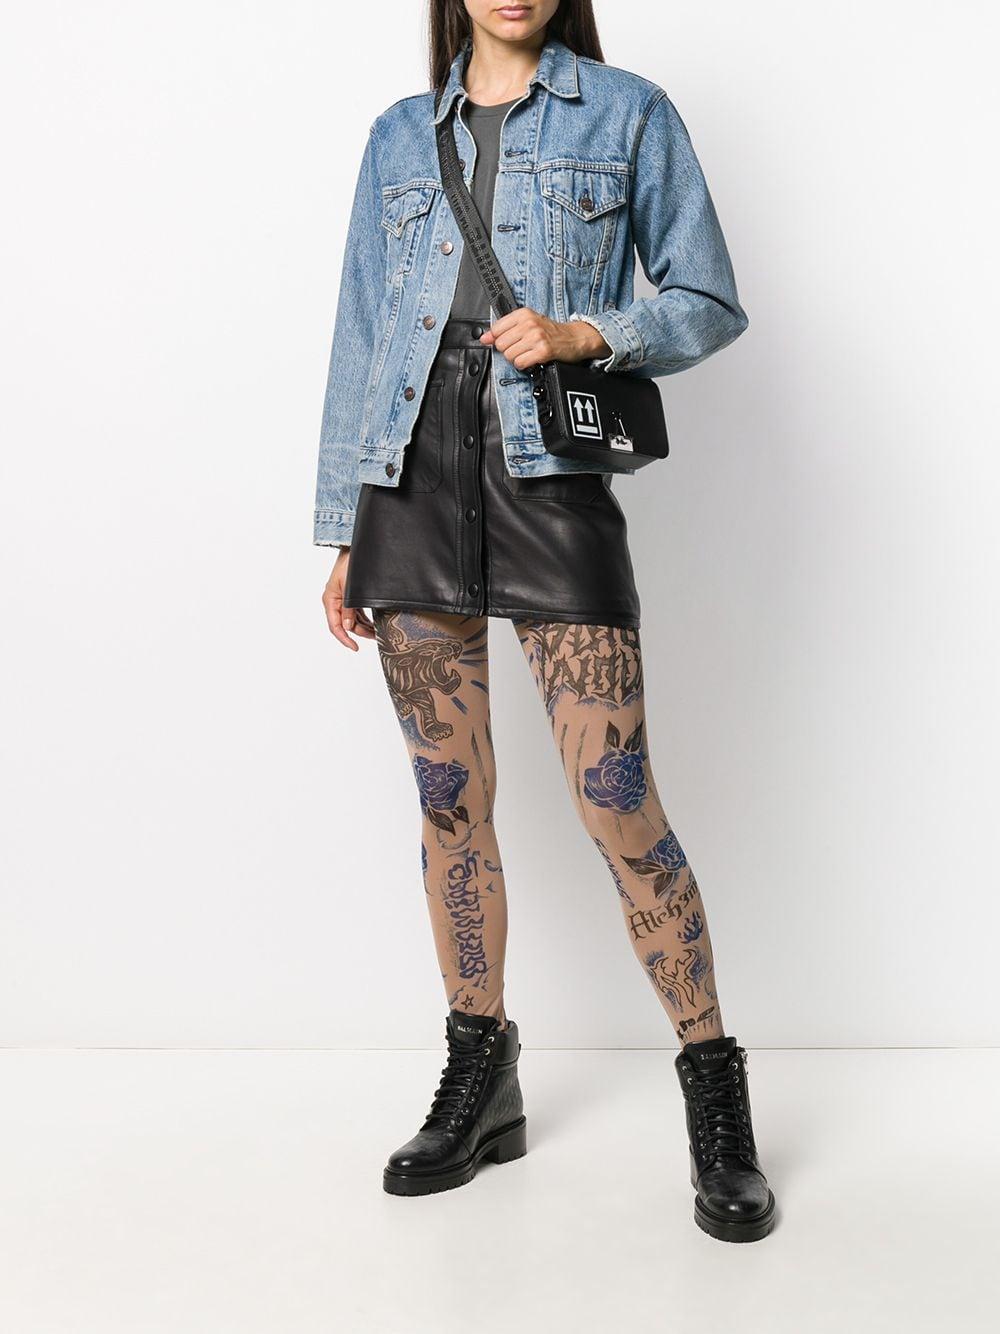 DIESEL Tattoo Print Sheer leggings in Black